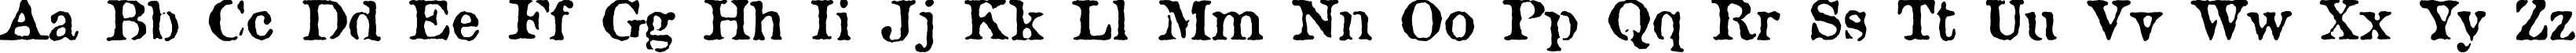 Пример написания английского алфавита шрифтом Attic Antique DemiBold